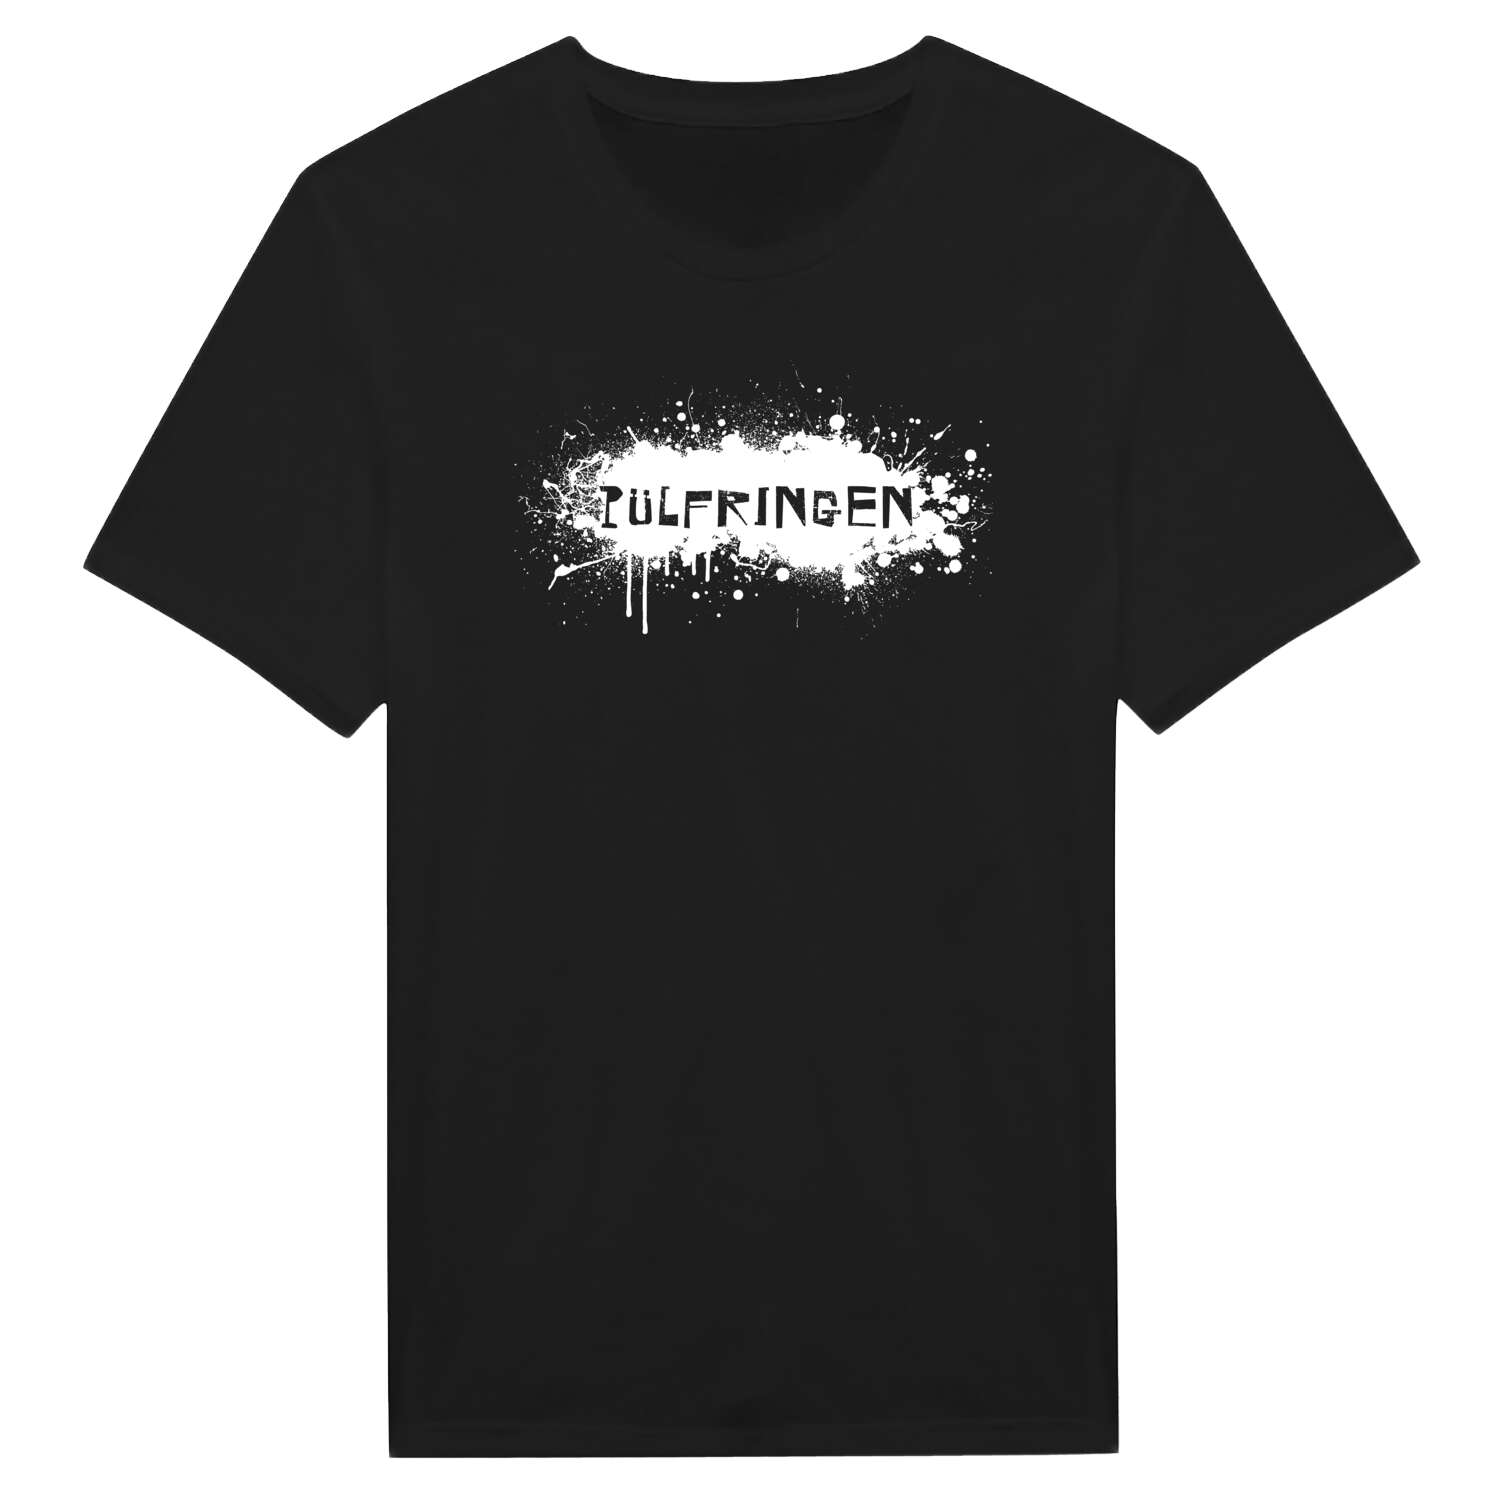 Pülfringen T-Shirt »Paint Splash Punk«